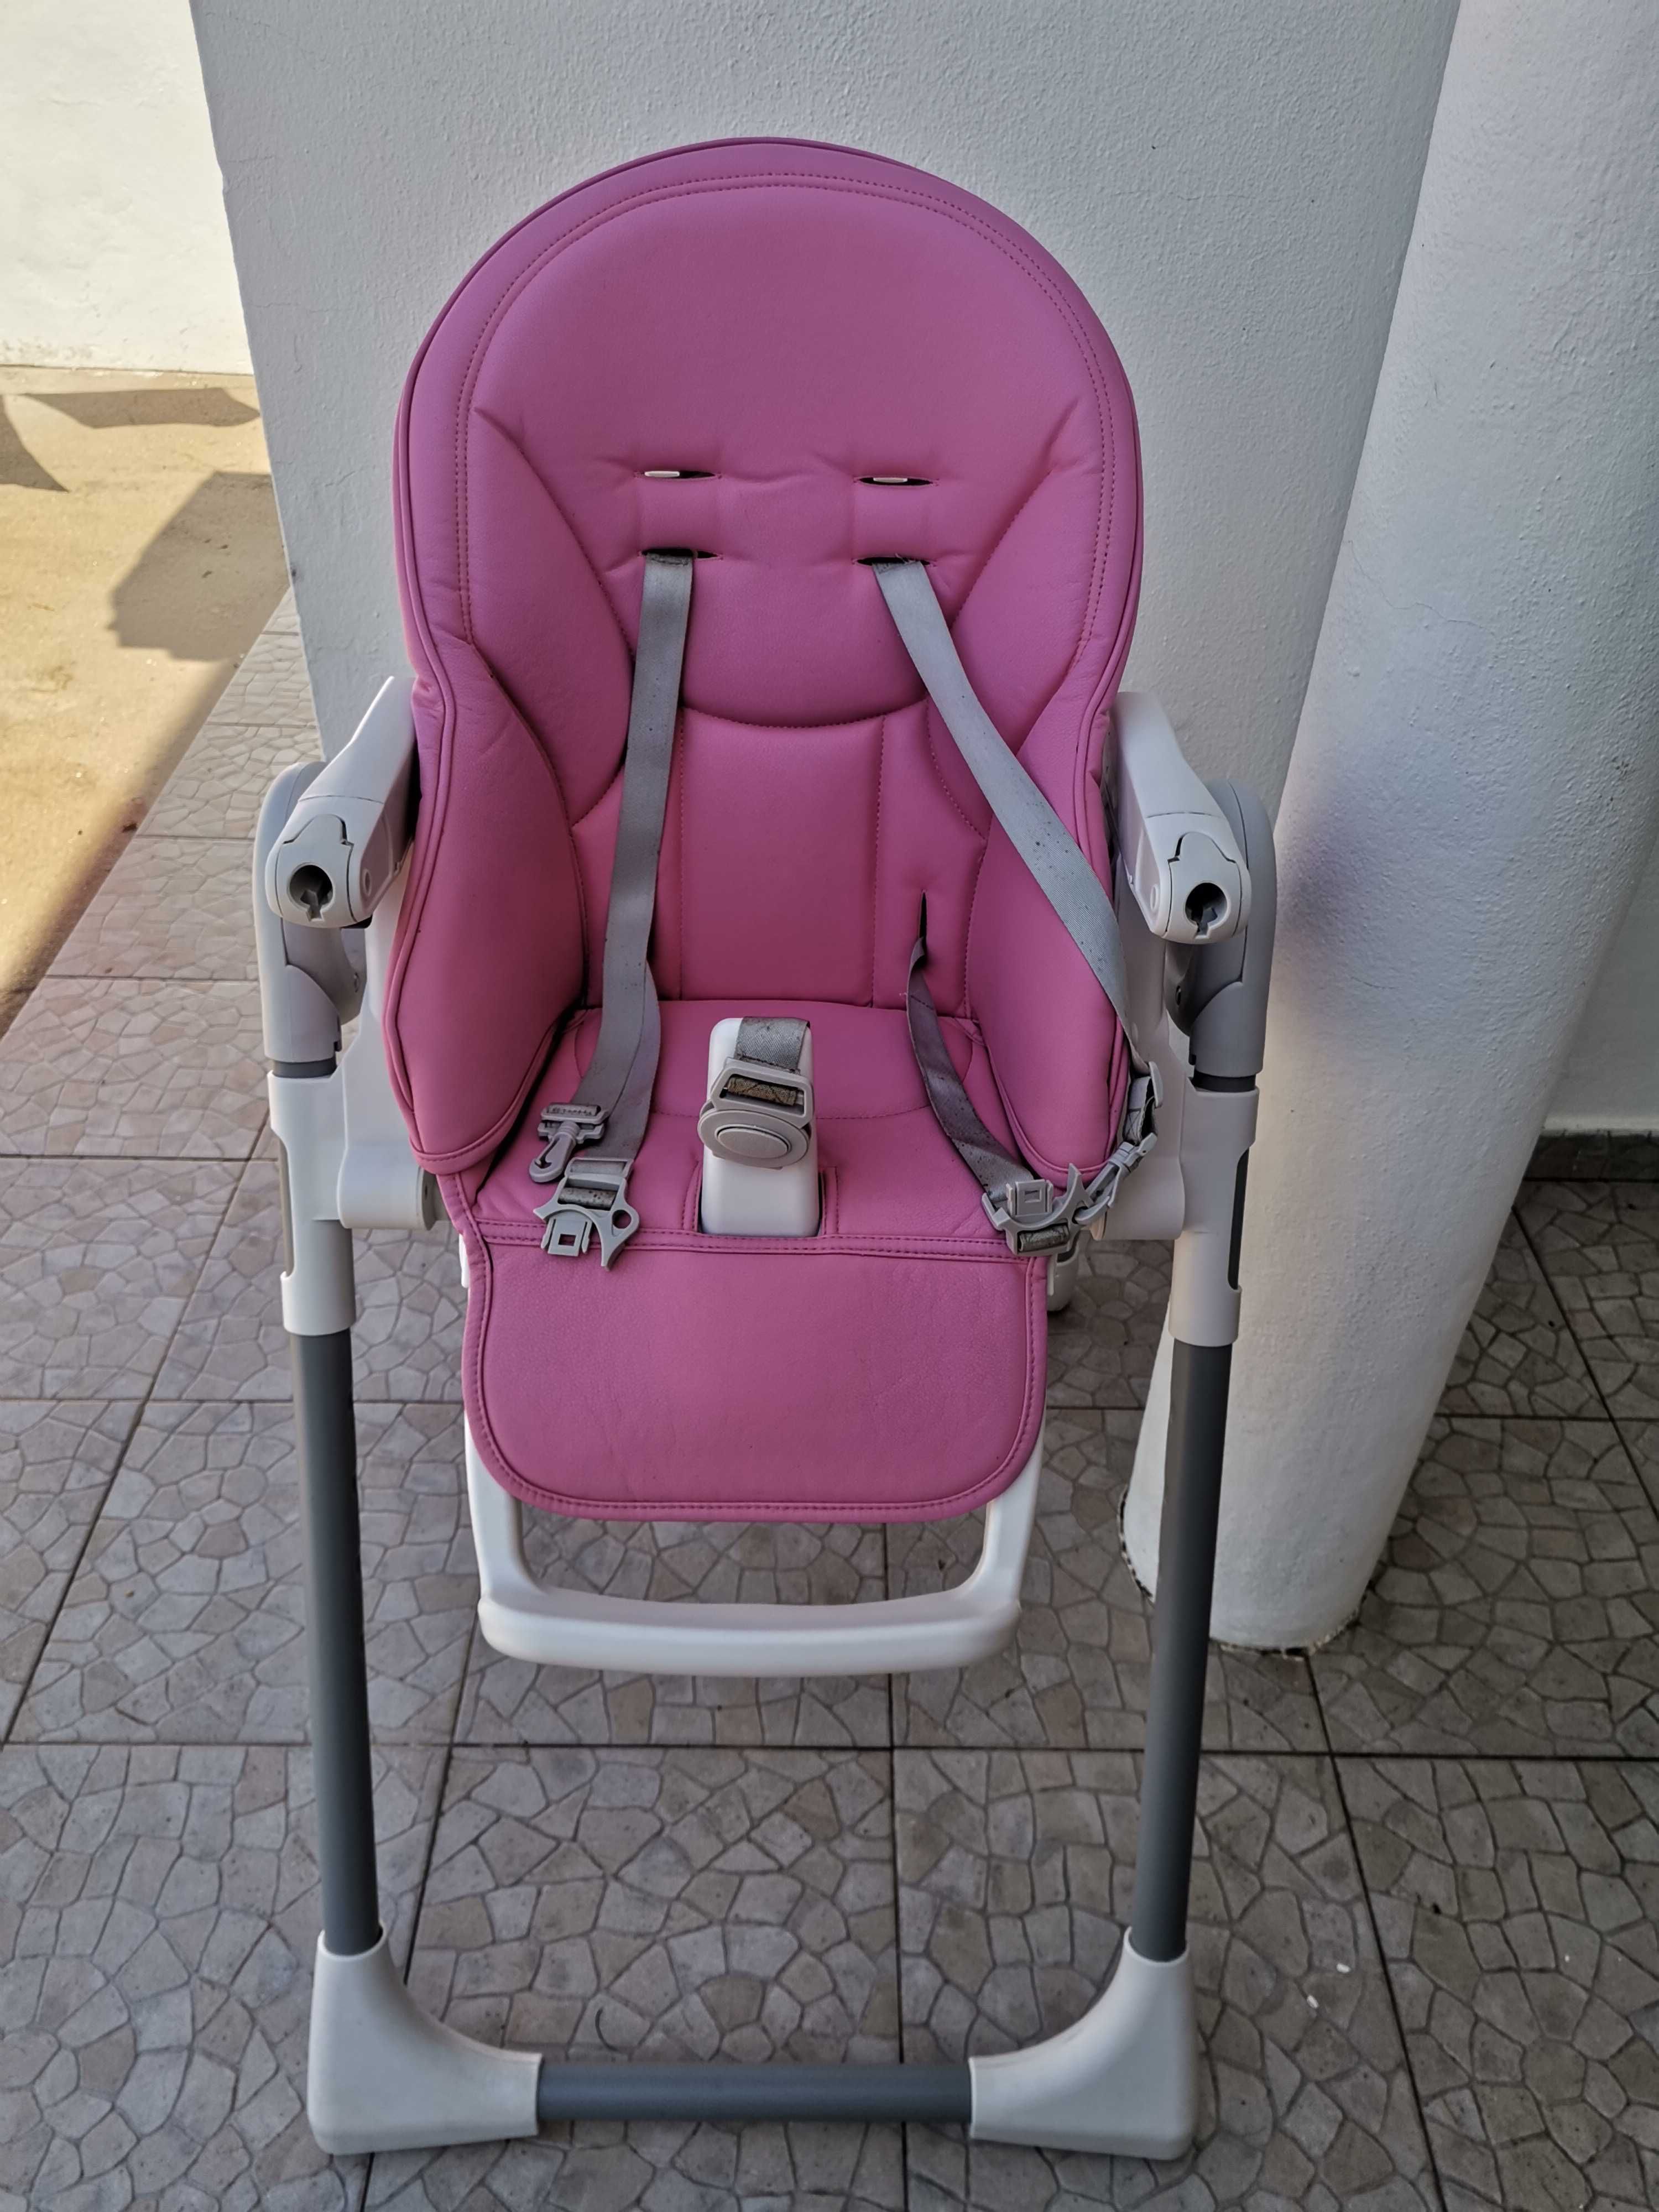 Cadeira de bebé em bom estado